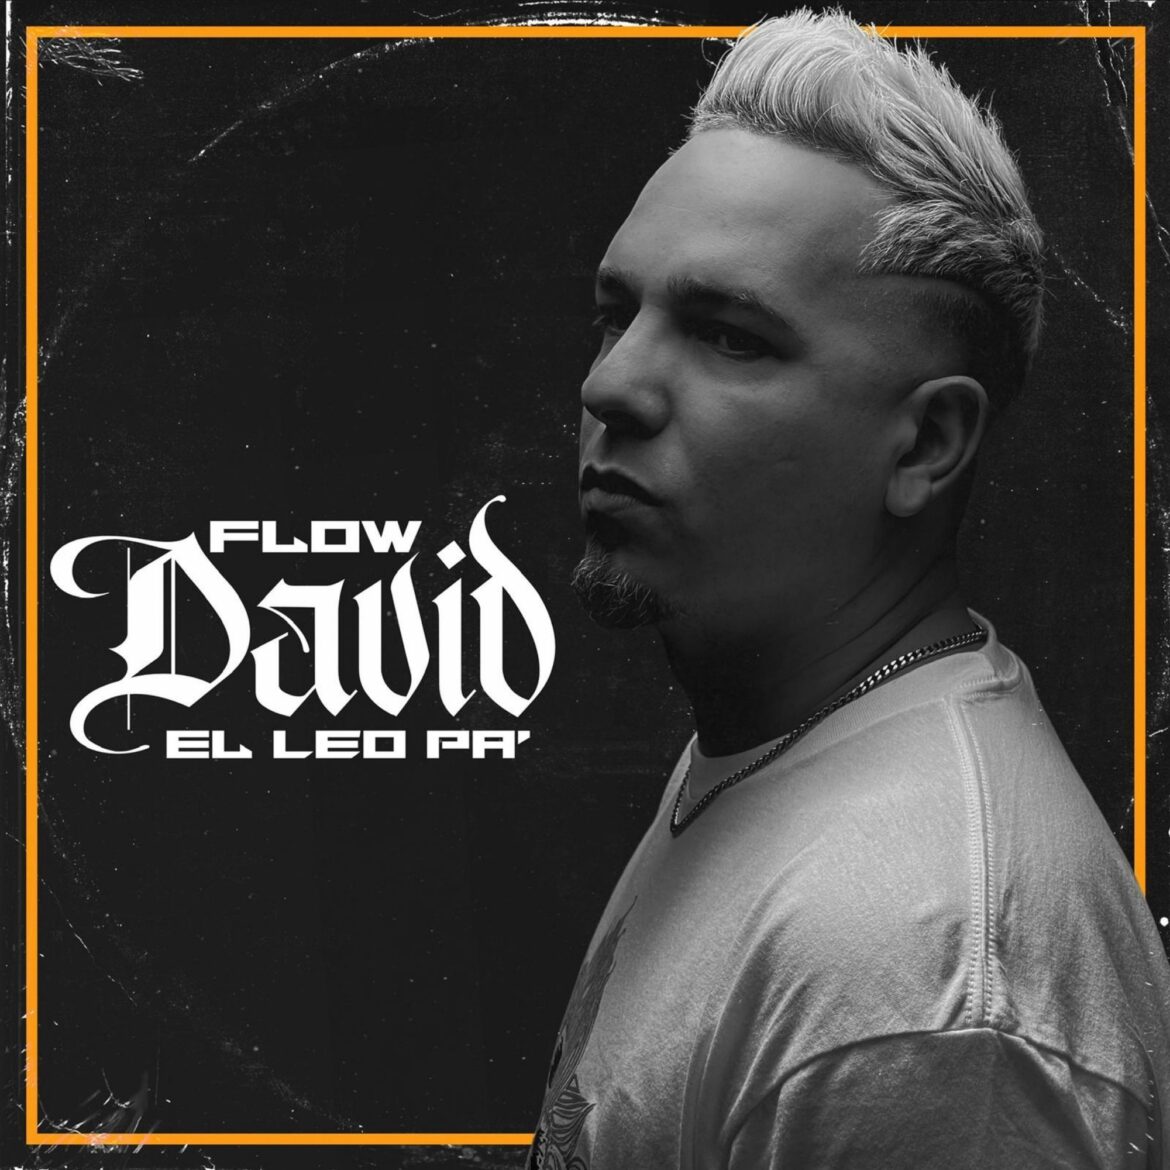 El Leo Pa lanza su tan esperado álbum titulado “Flow David” un mensaje inspirador para las nuevas generaciones